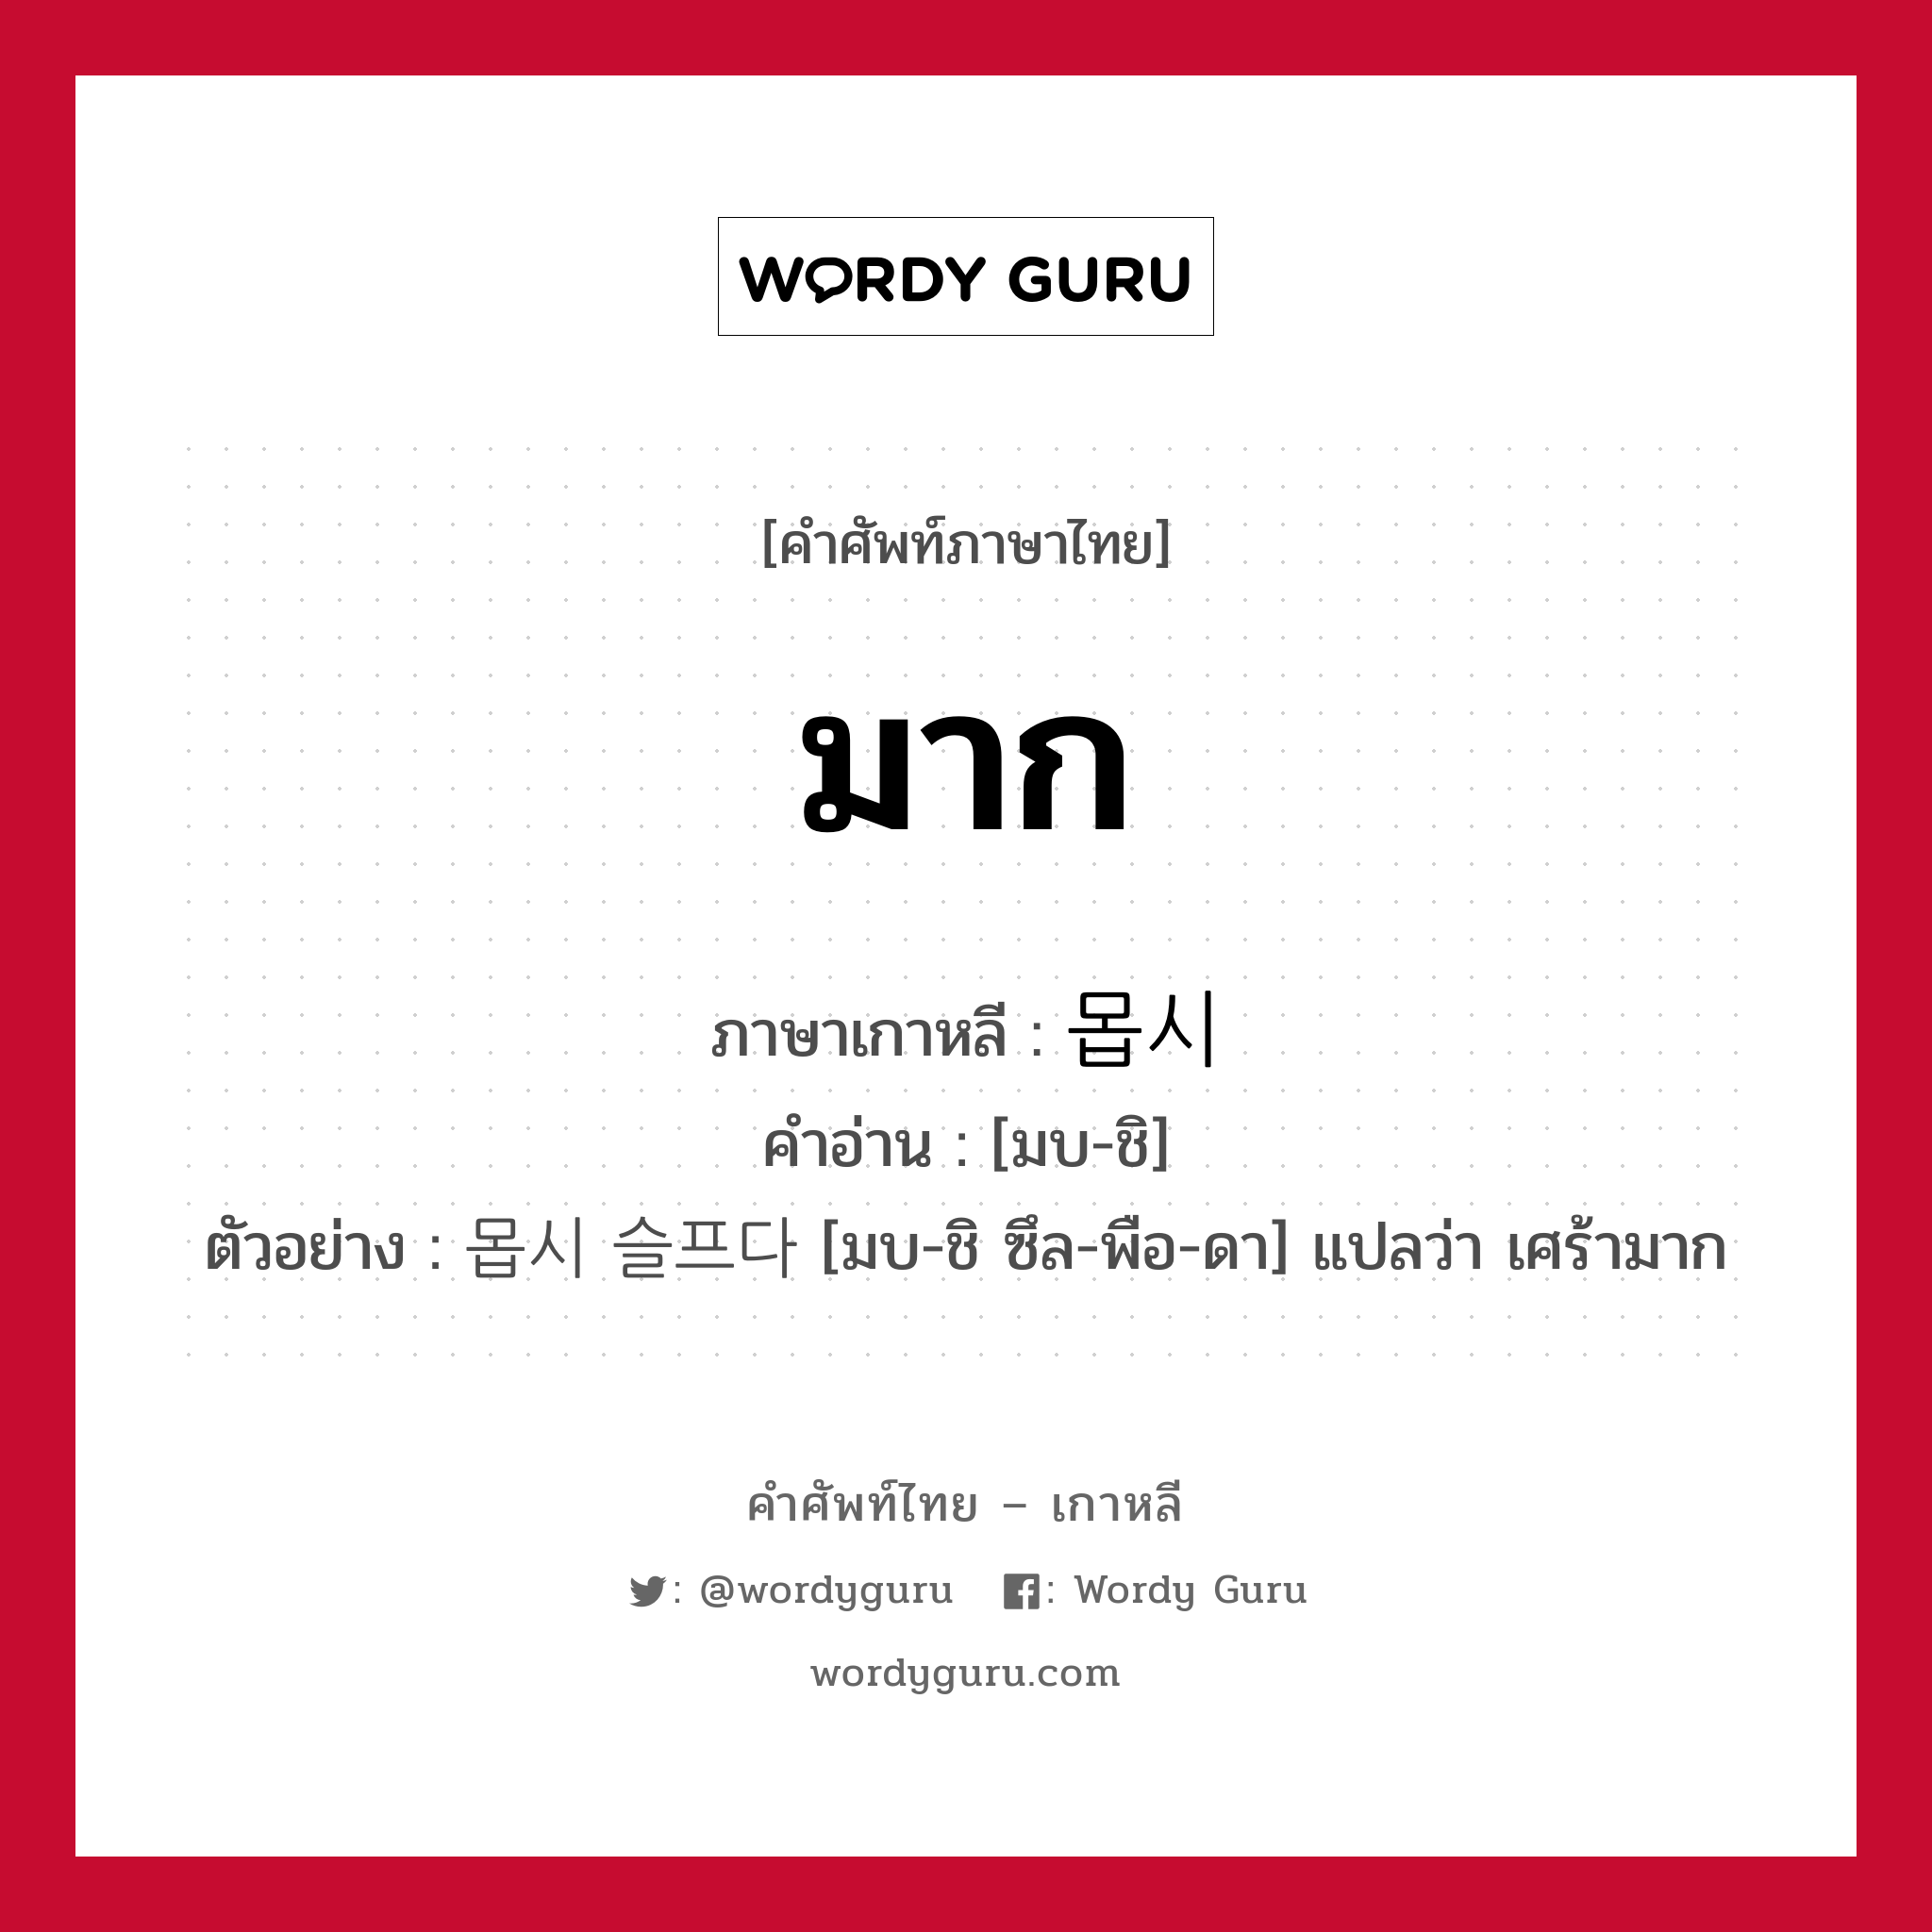 มาก ภาษาเกาหลีคืออะไร, คำศัพท์ภาษาไทย - เกาหลี มาก ภาษาเกาหลี 몹시 คำอ่าน [มบ-ชิ] ตัวอย่าง 몹시 슬프다 [มบ-ชิ ซึล-พือ-ดา] แปลว่า เศร้ามาก